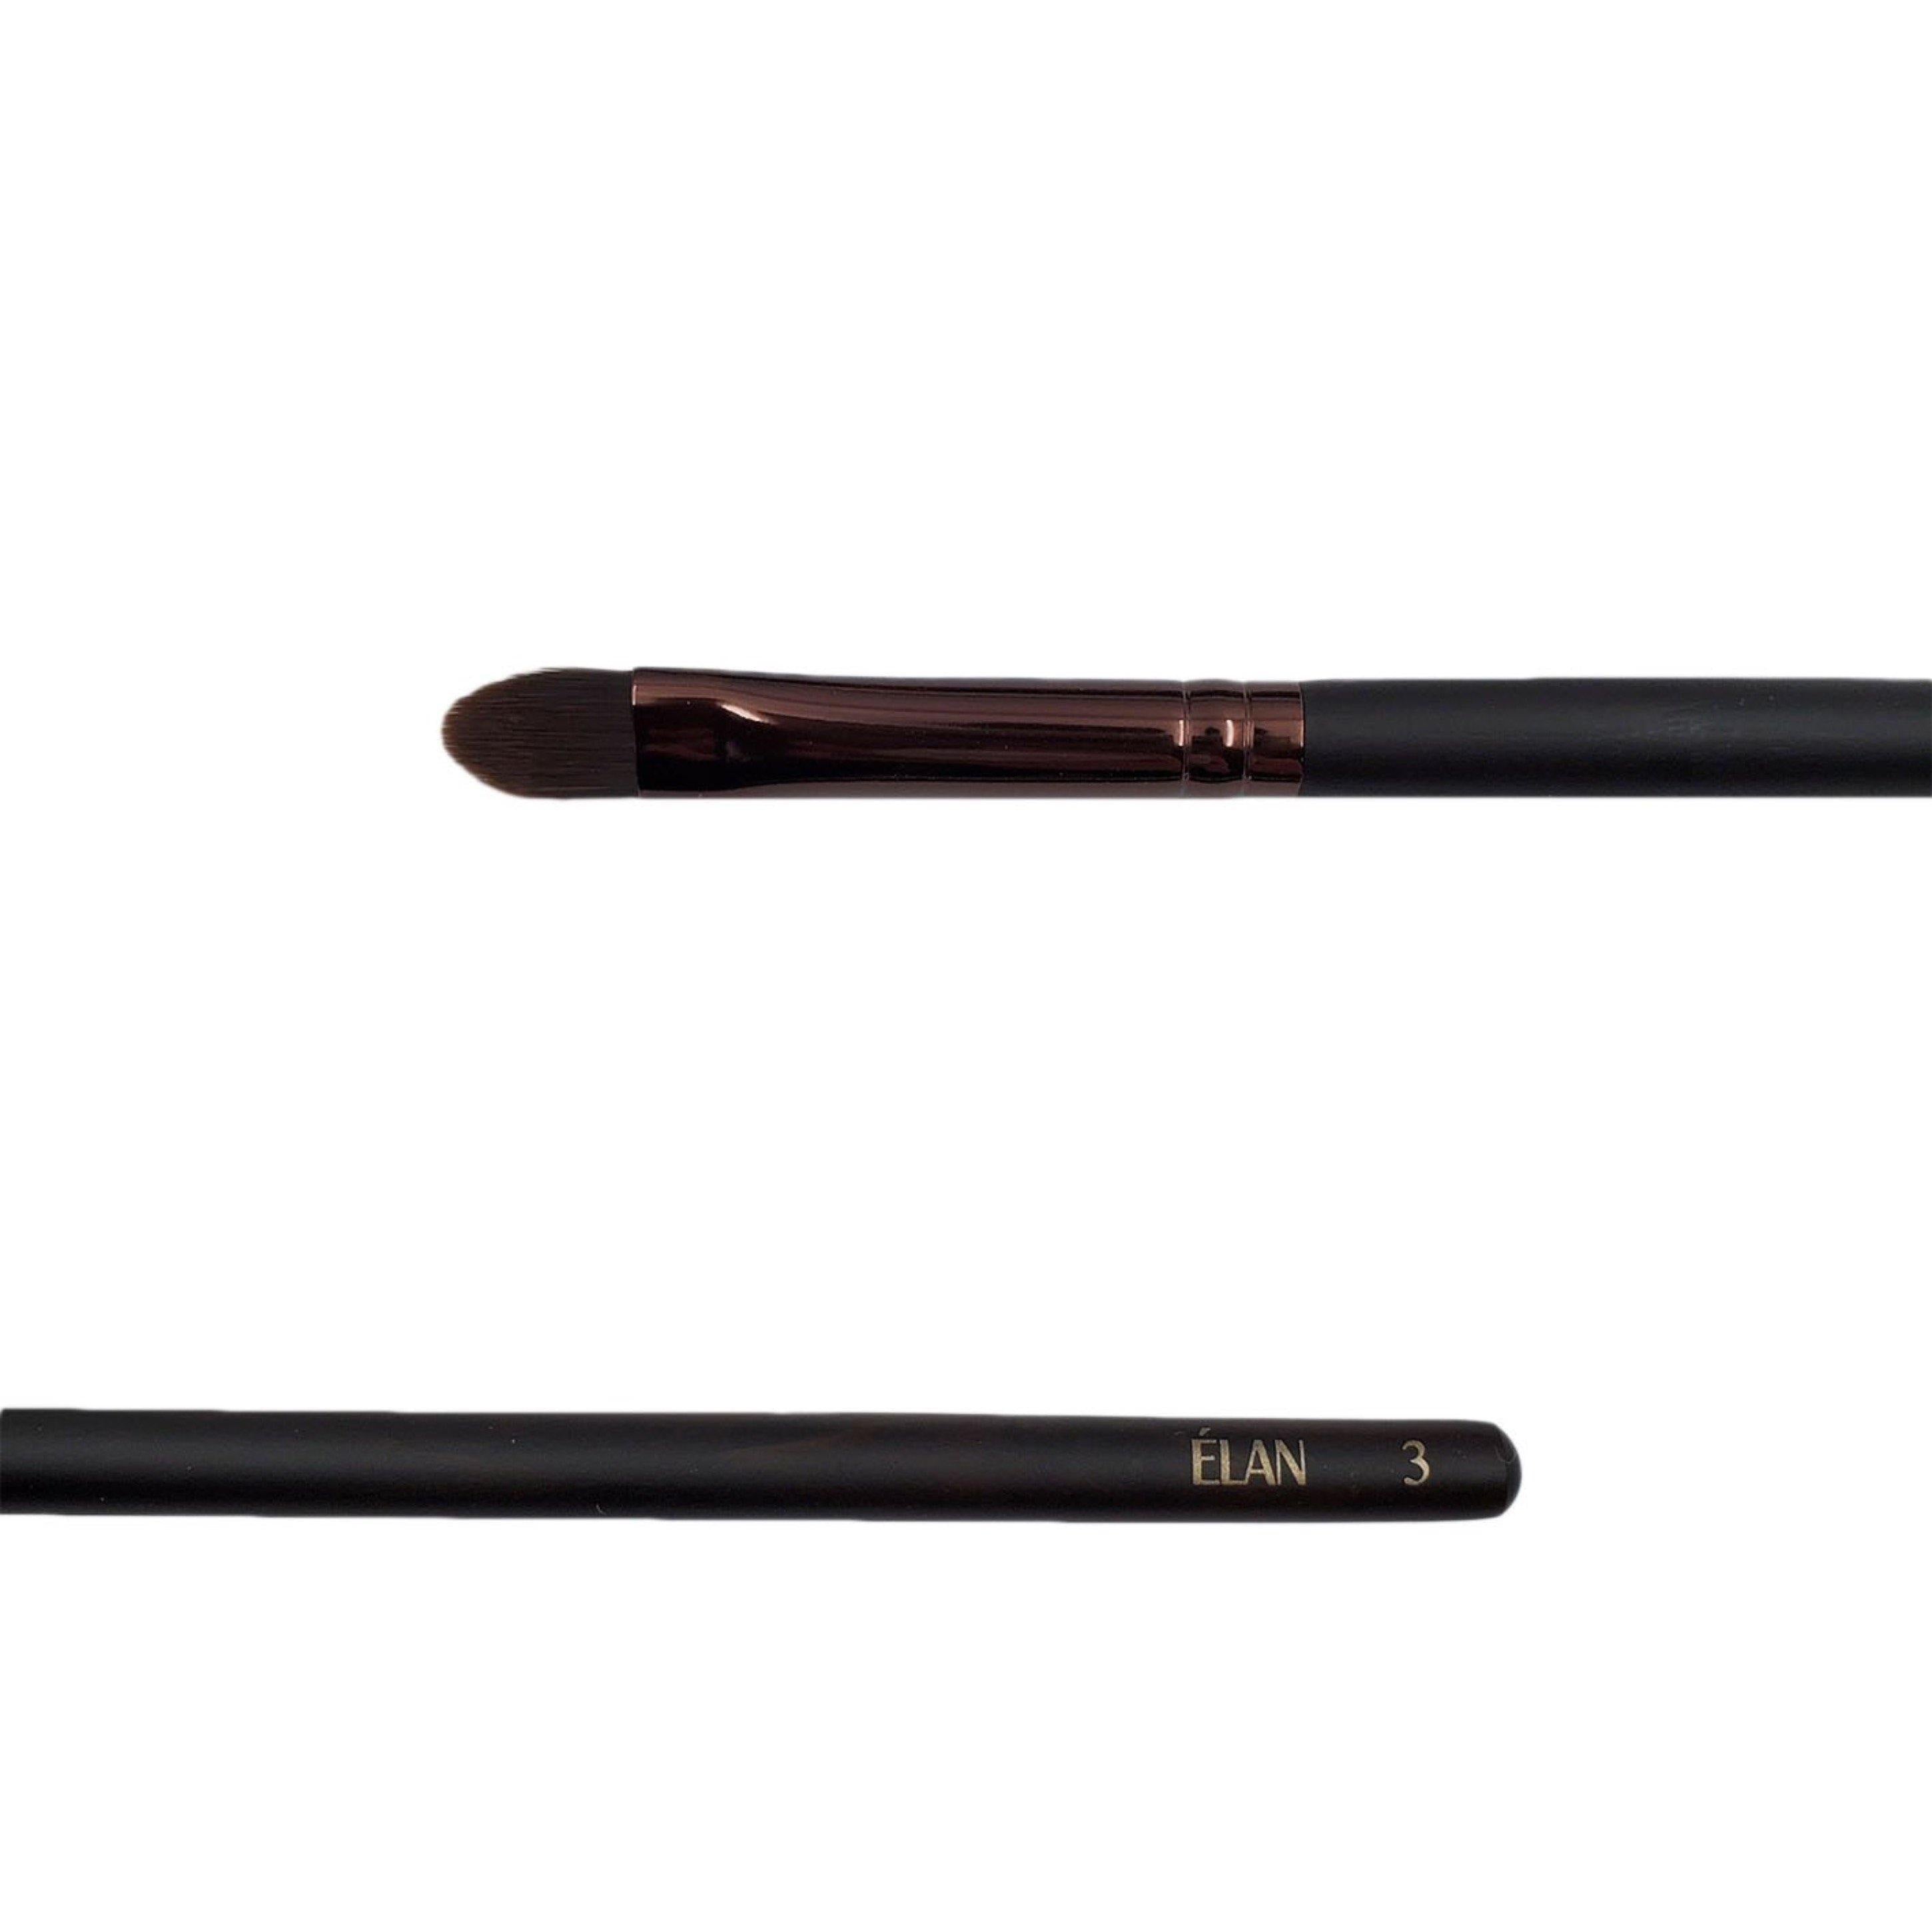 Elan wooden makeup brush 3 round tip